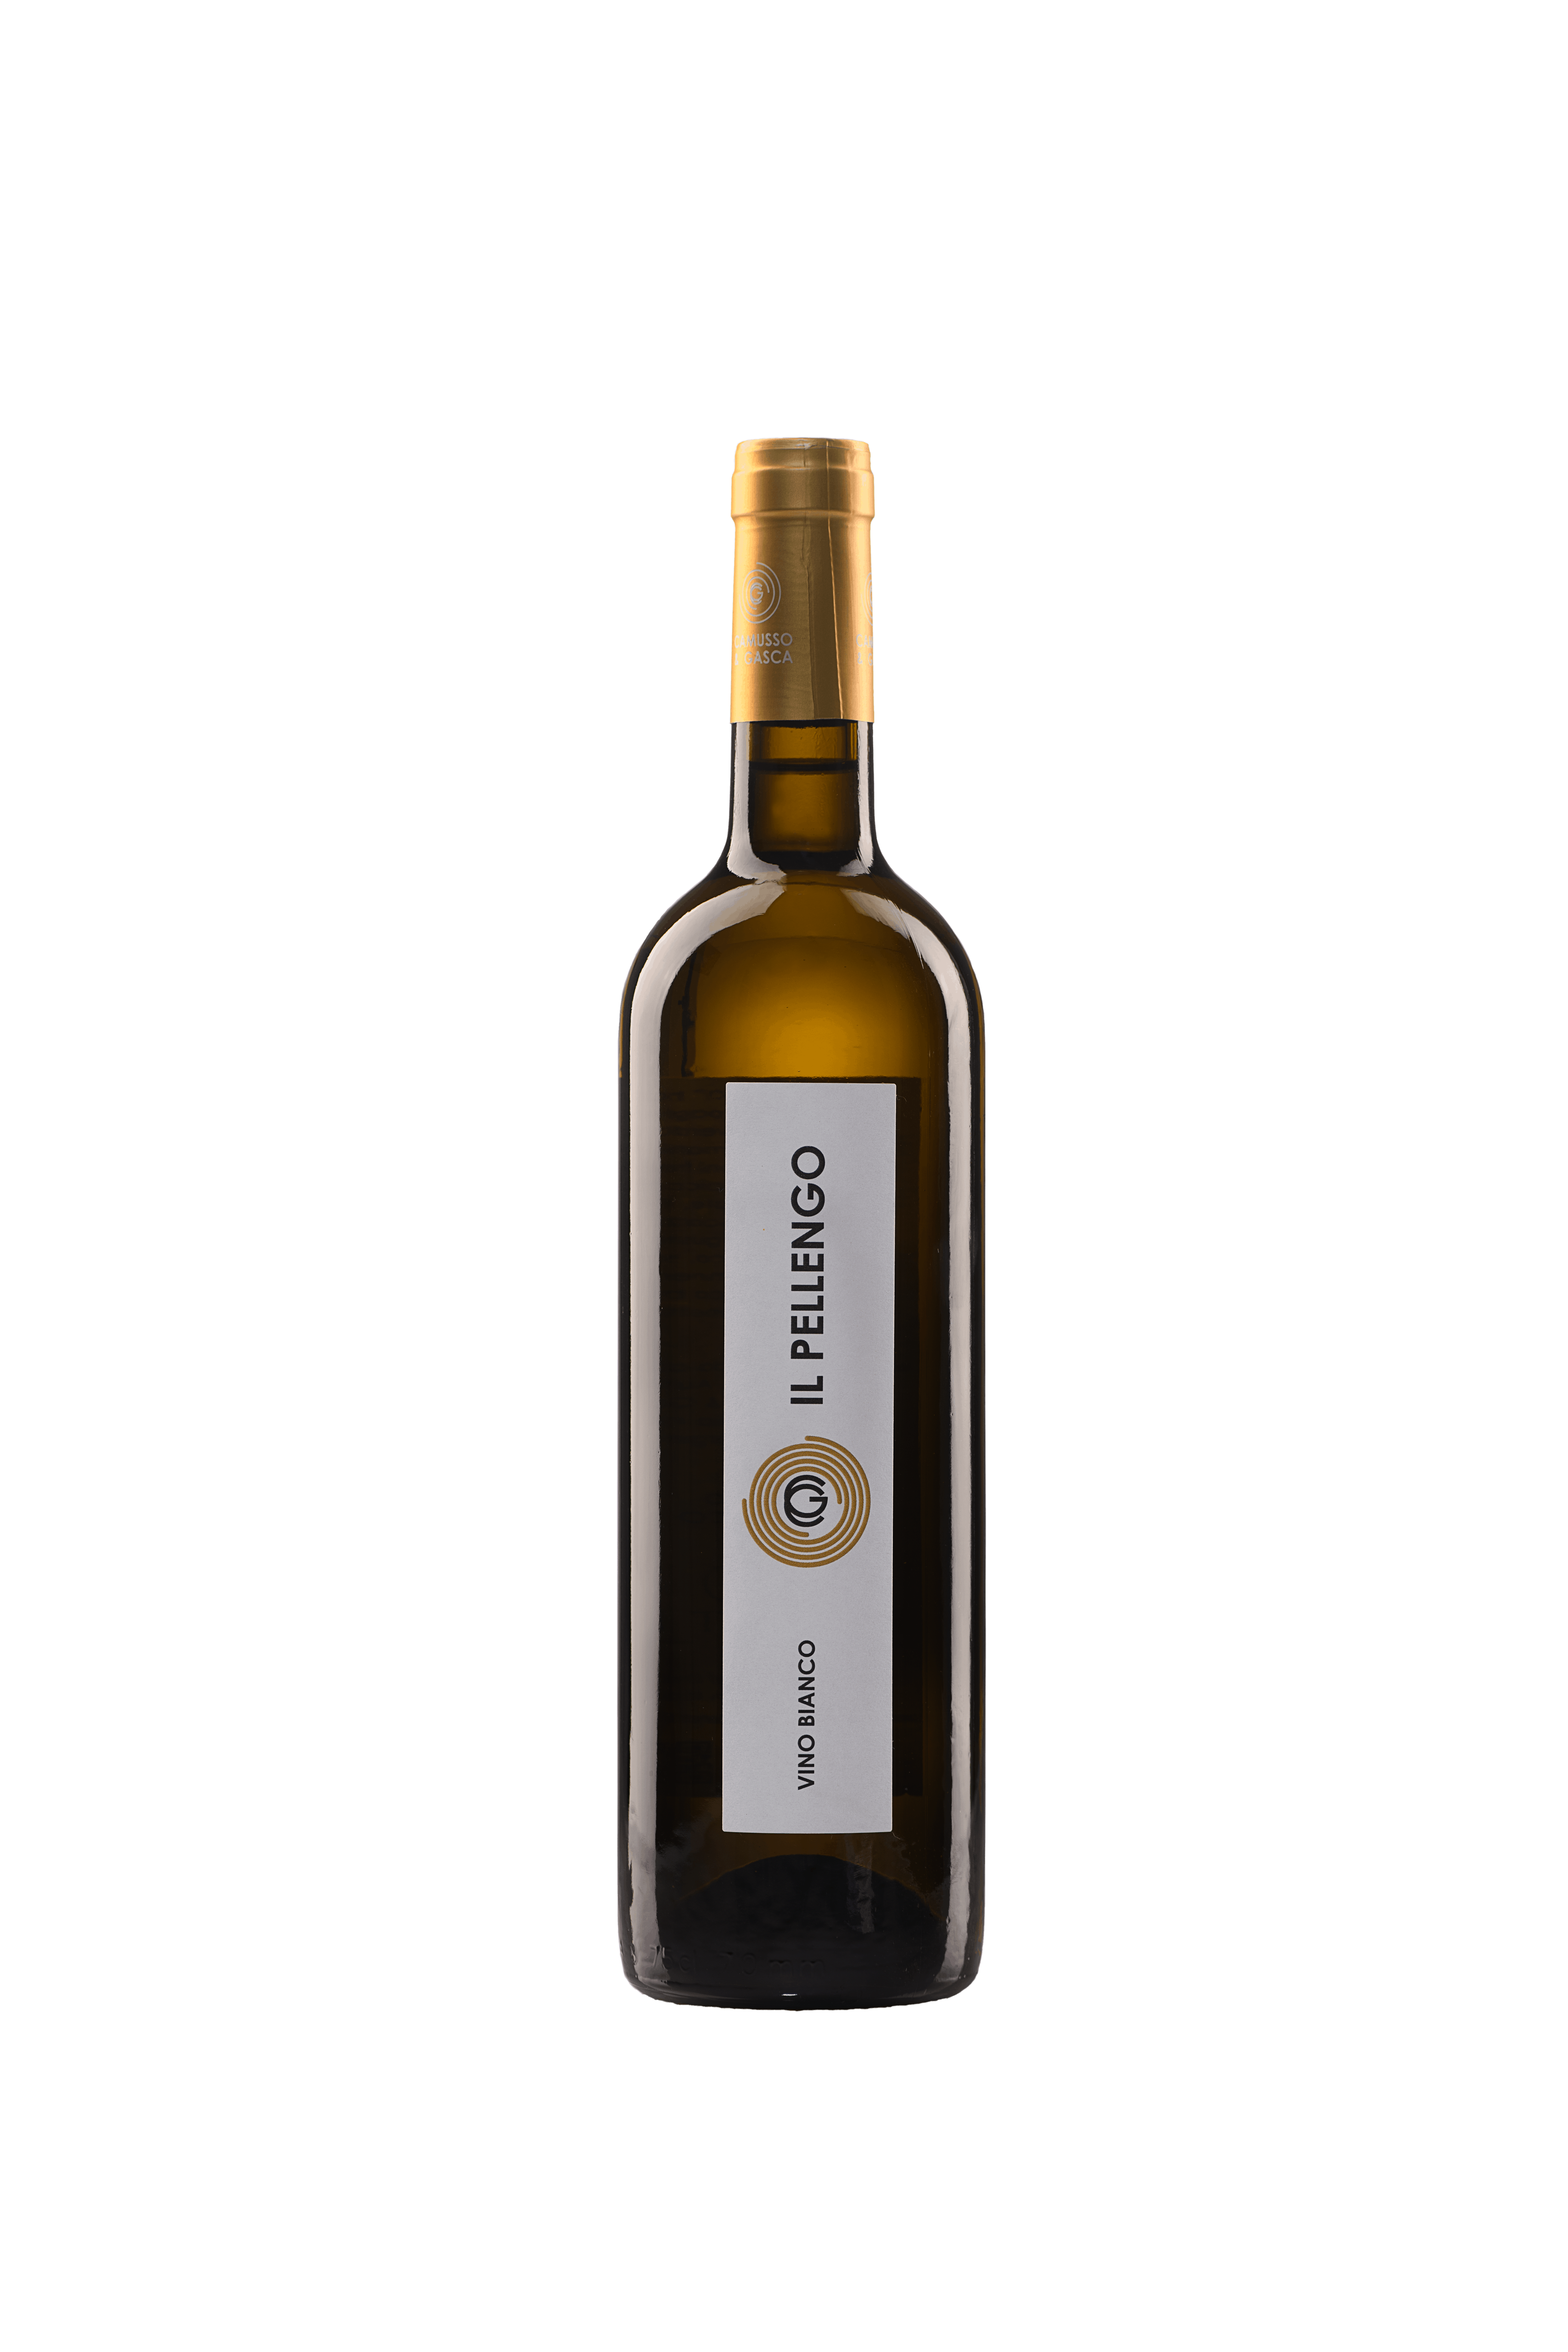 Il Pellengo, vino bianco biologico senza solfiti aggiunti